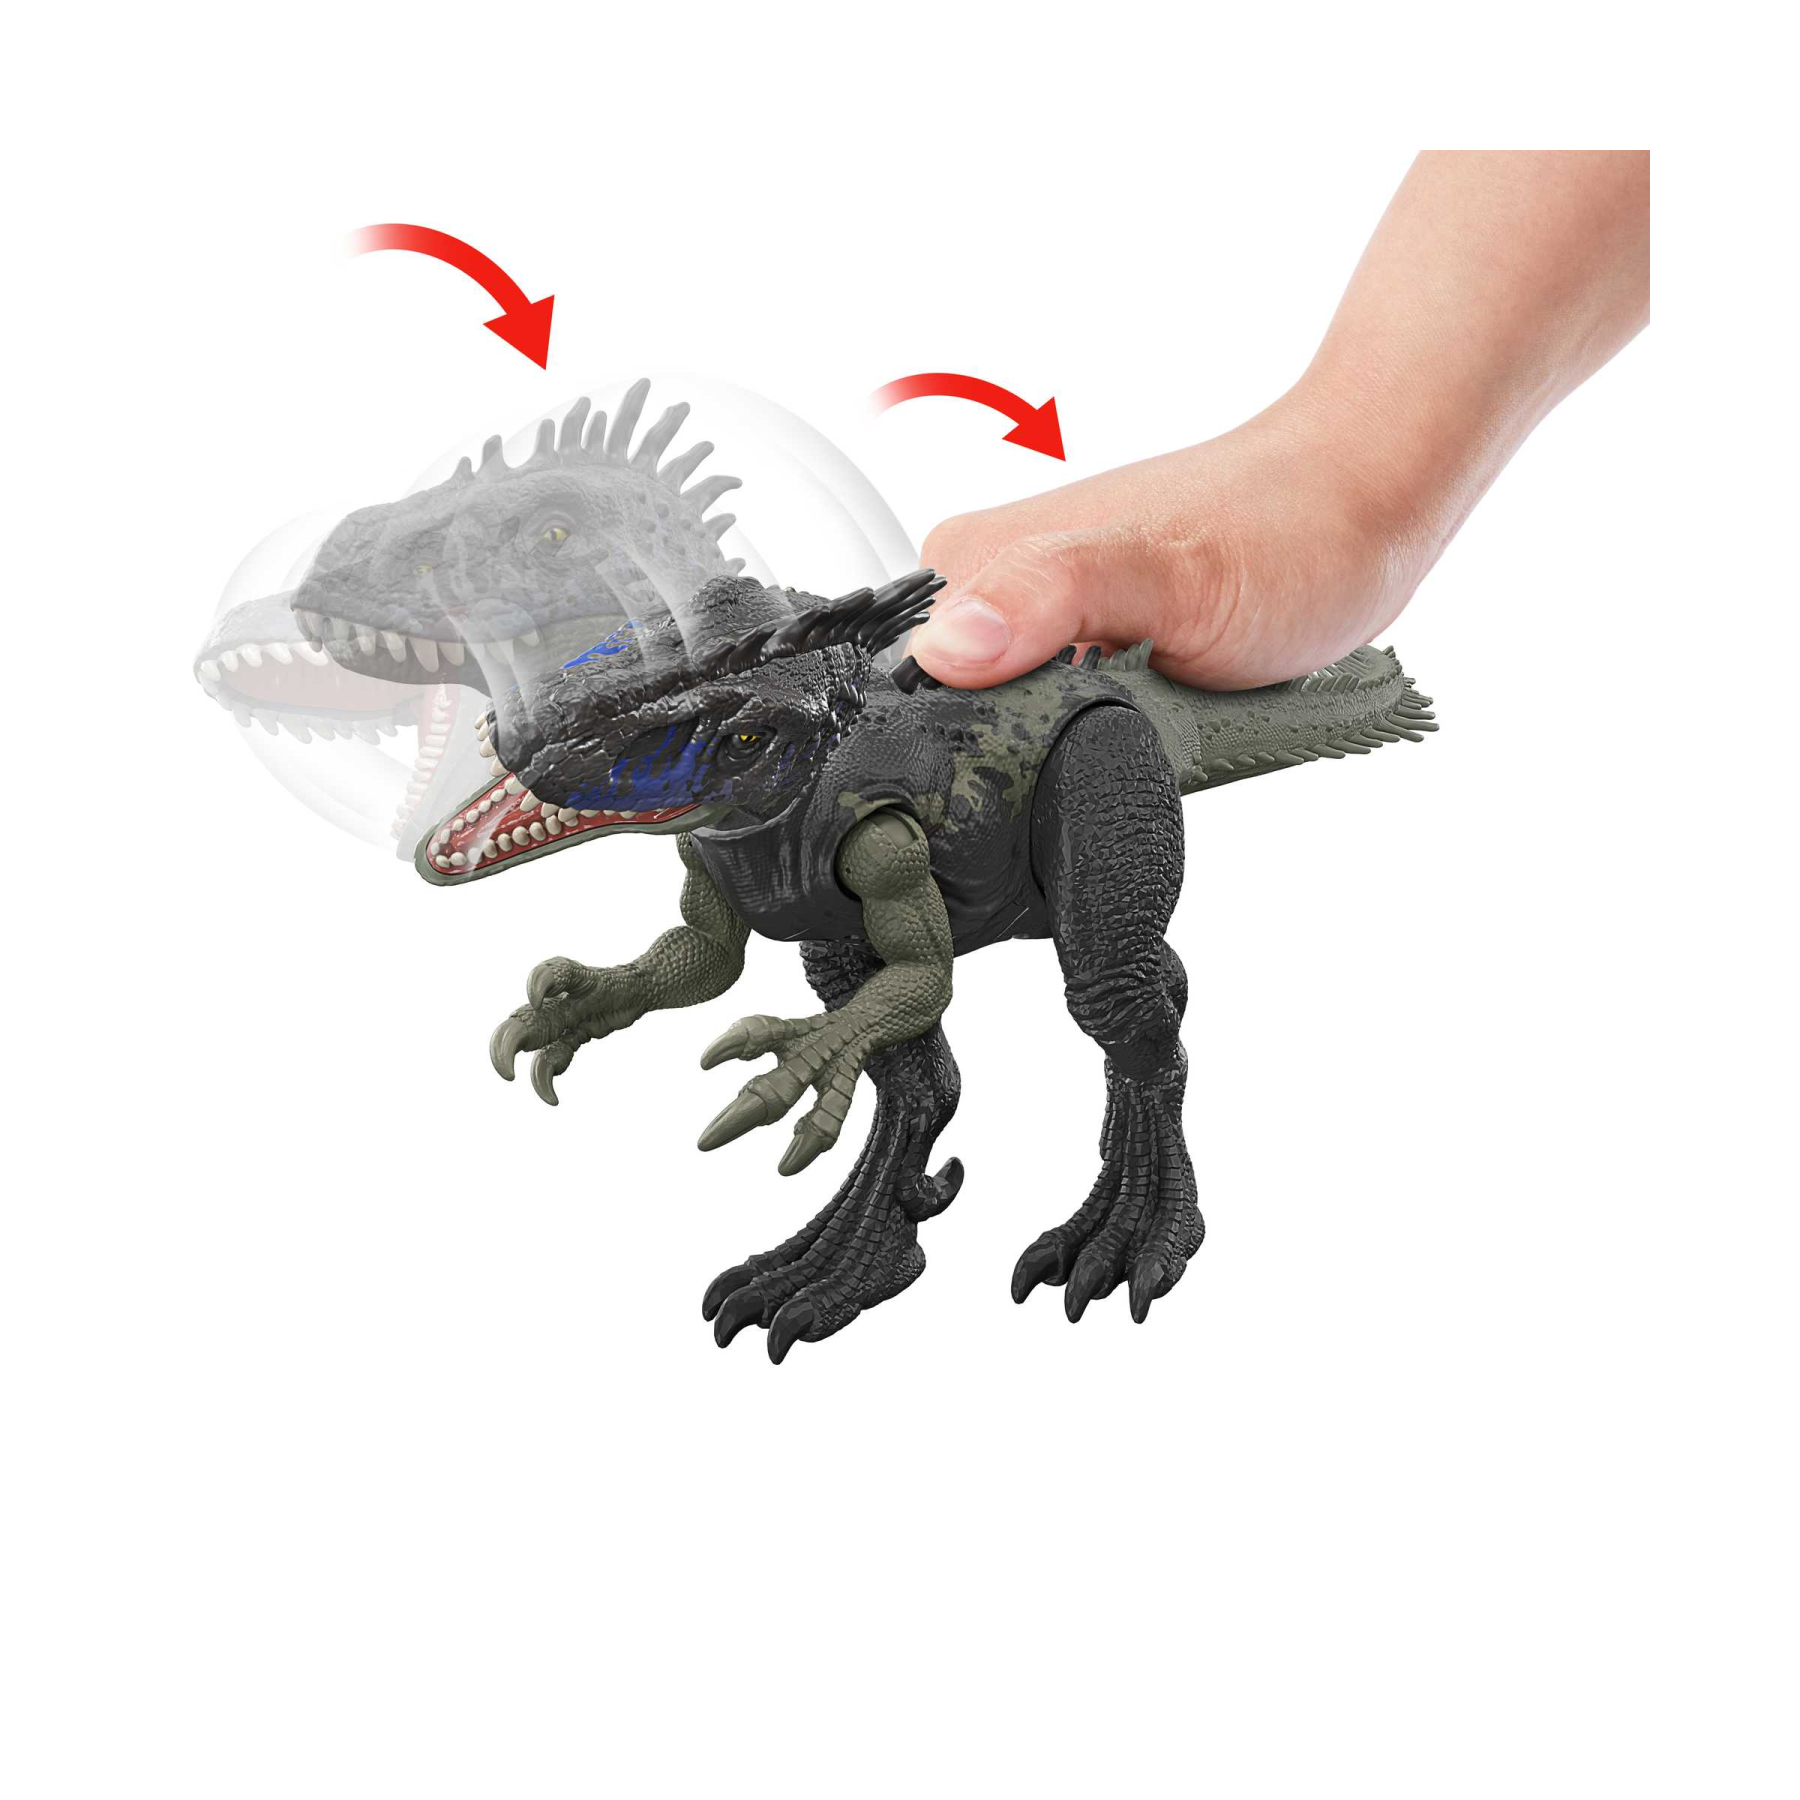 Jurassic world - ruggito selvaggio, driptosauro, con suoni e mosse d'attacco, dimensioni medie, snodato e con gioco digitale​, giocattolo per bambini, 4+ anni, hlp15 - Jurassic World